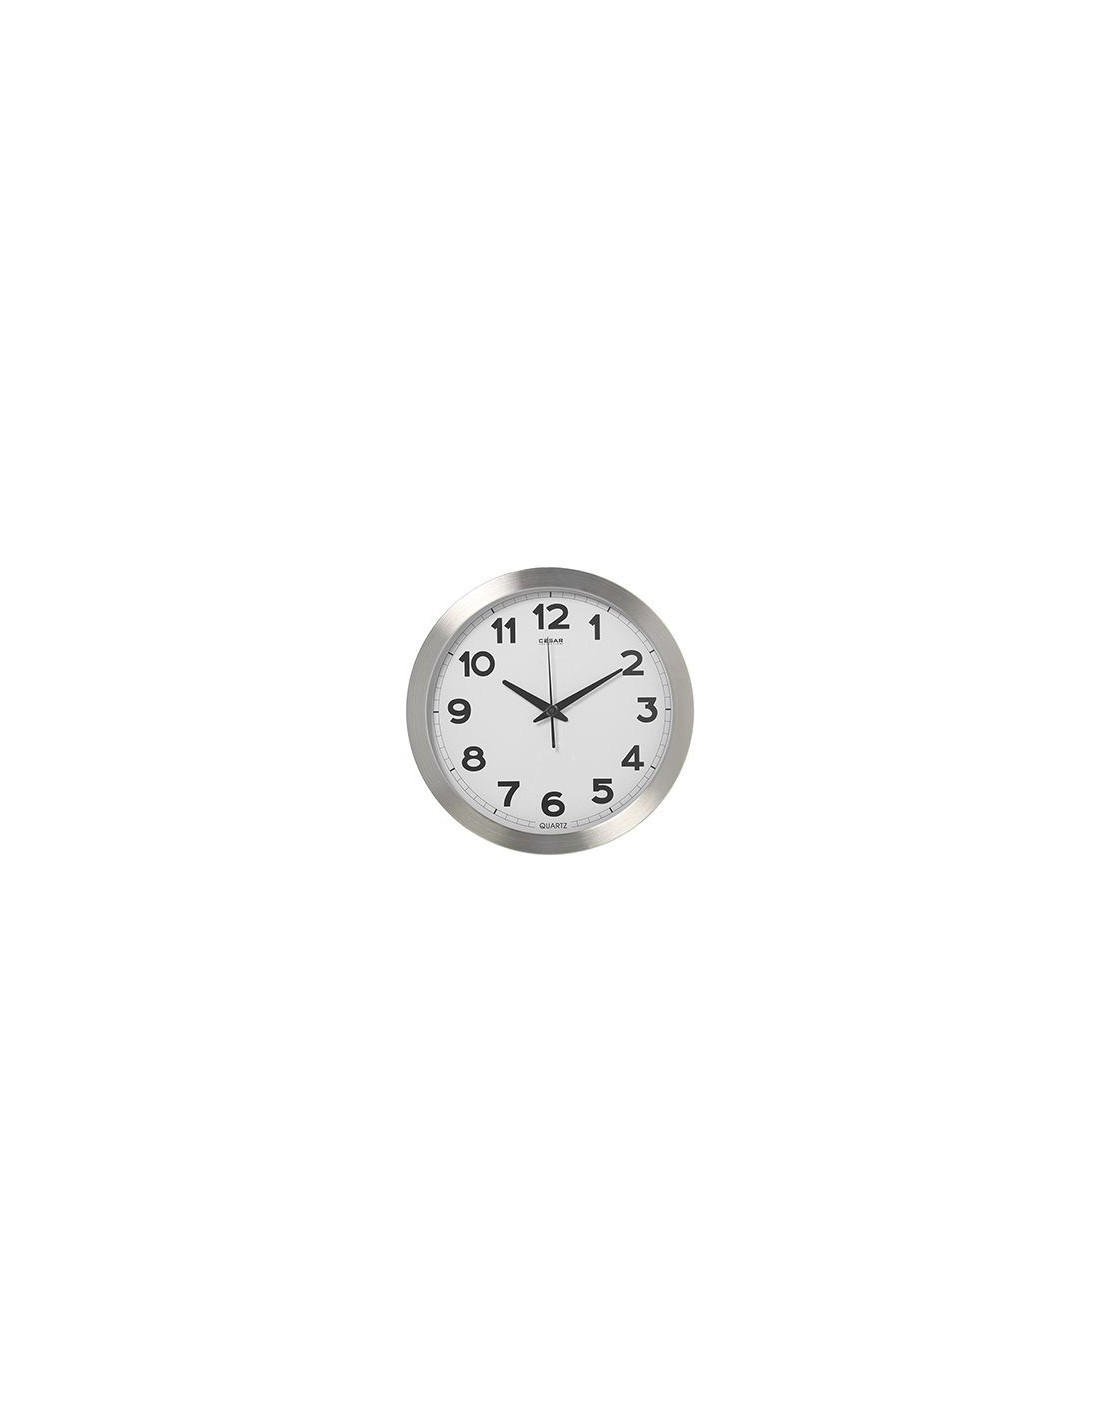 autoadhesiva, números árabes, diámetro Exterior: 84-140 mm, Material: lámina de PVC Esfera Blanca para Relojes de Pared Color Blanco SELVA 